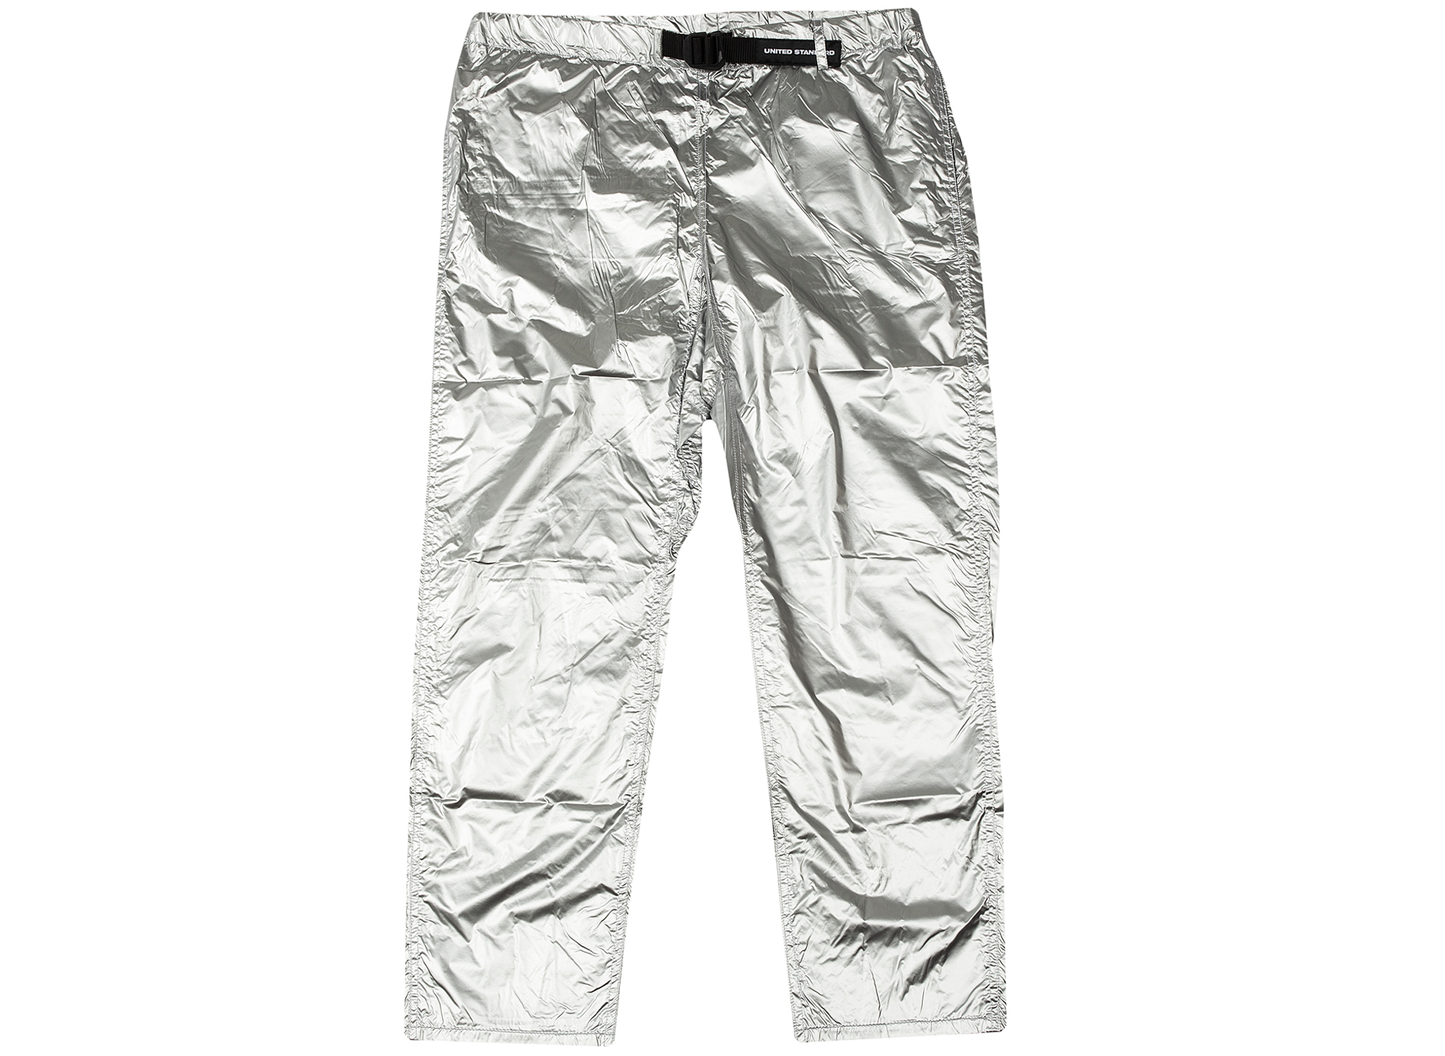 United Standard Silver Trek Pants